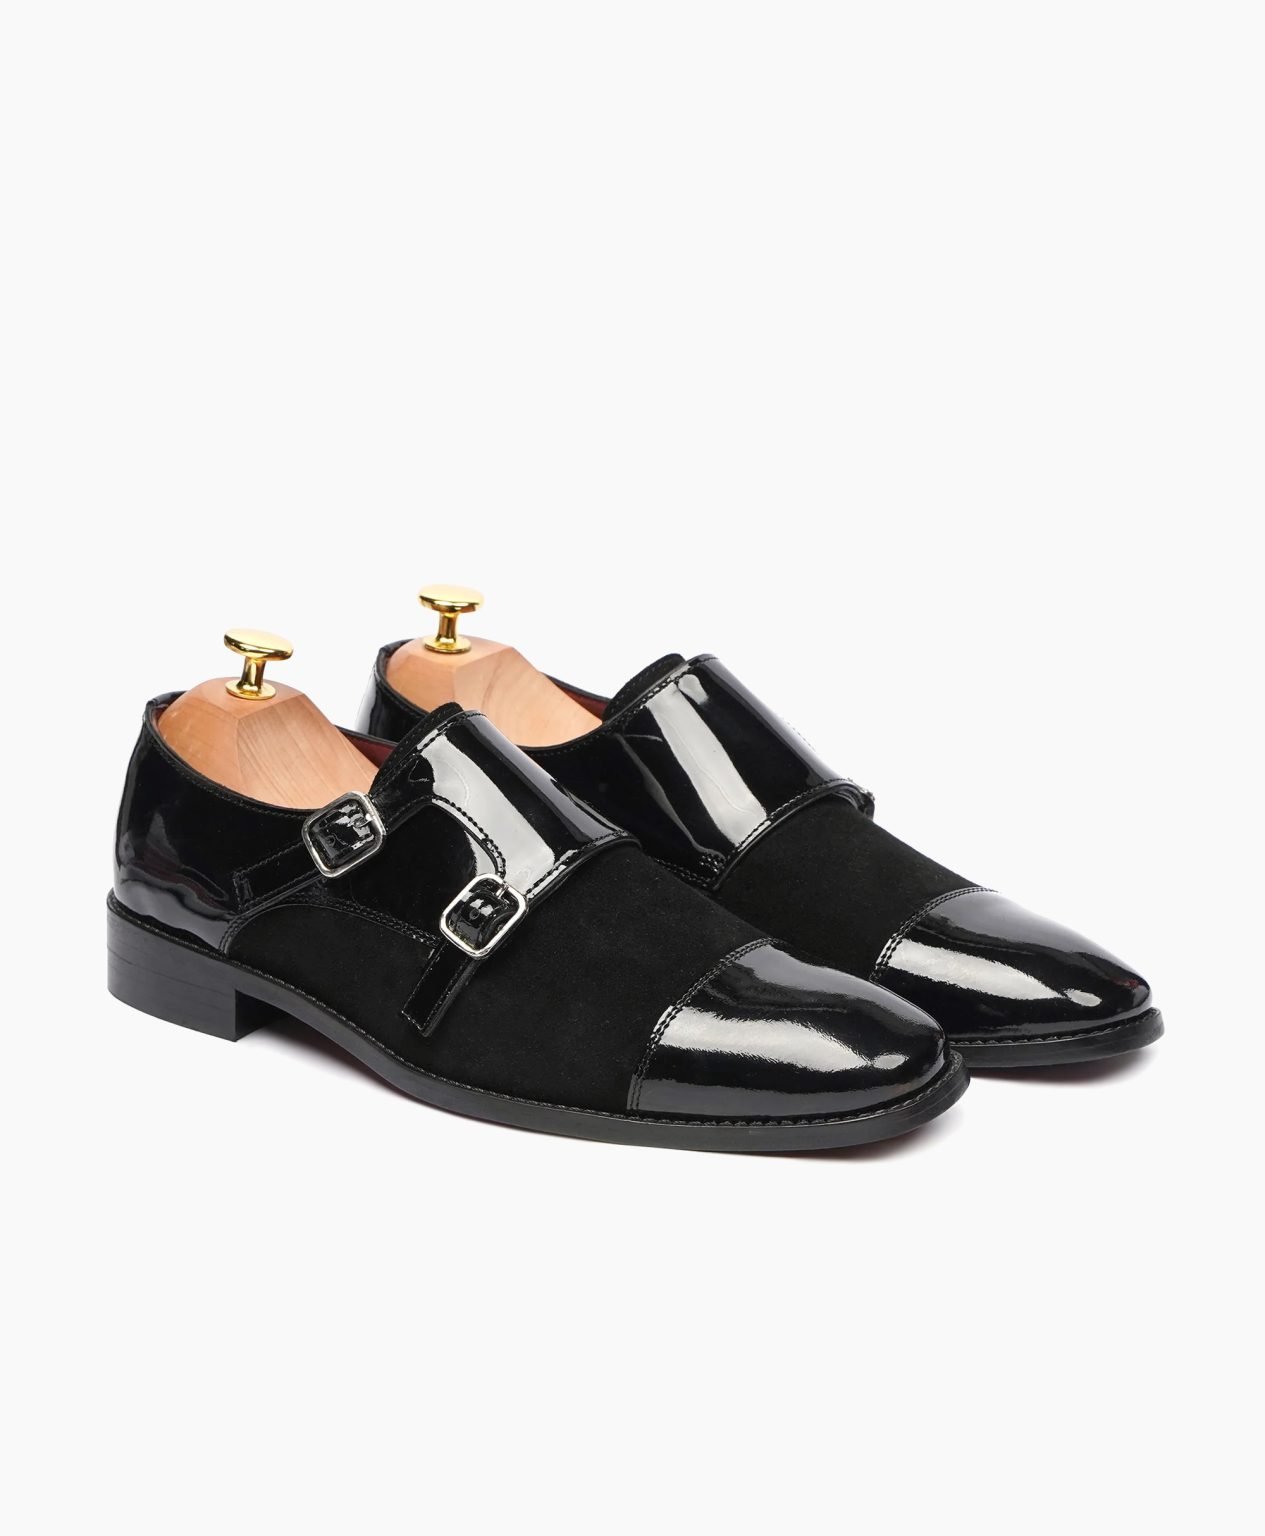 totnes-double-monkstrap-black-leather-shoes-image200